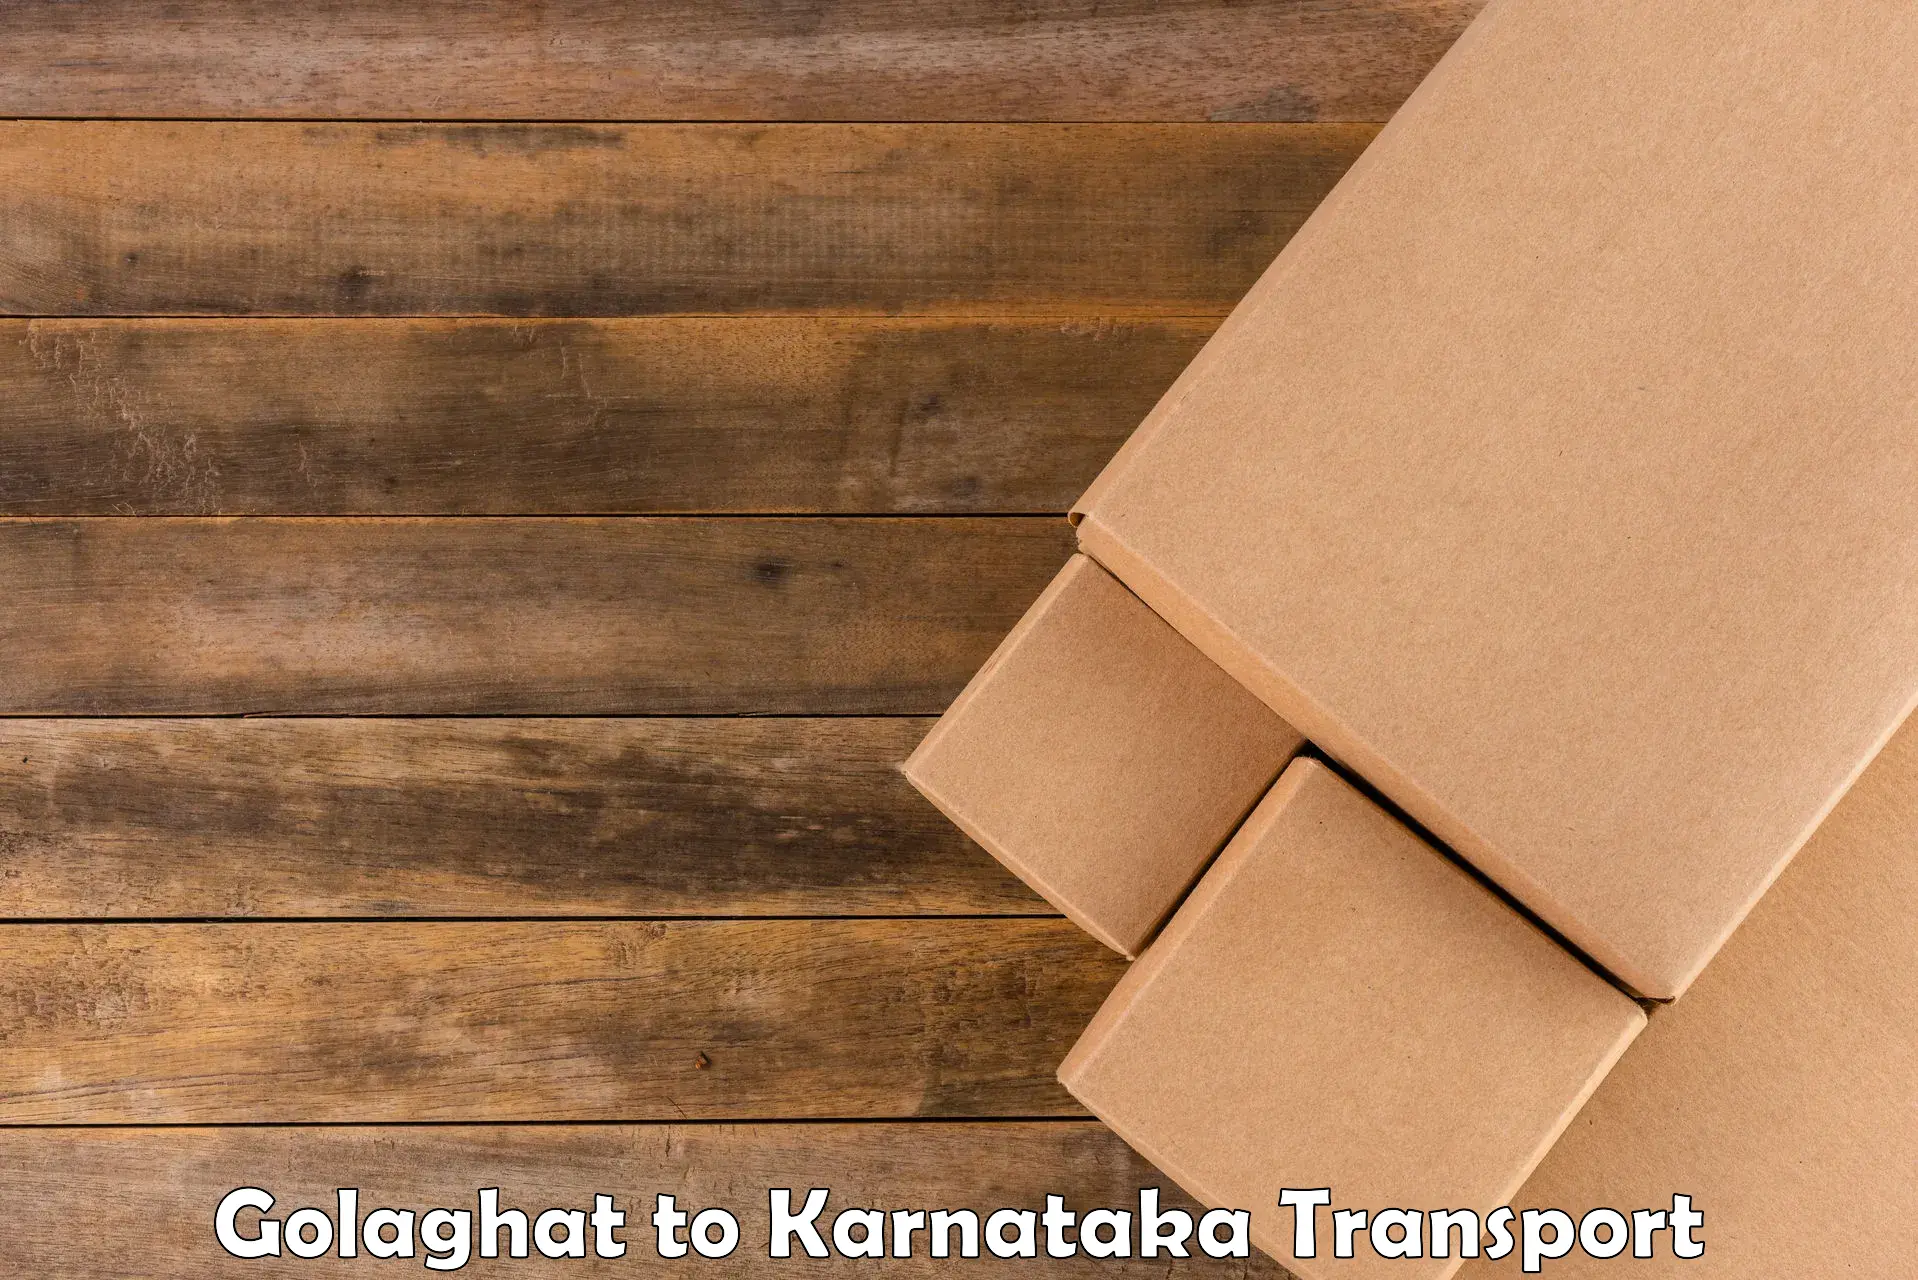 Shipping services Golaghat to Yenepoya Mangalore